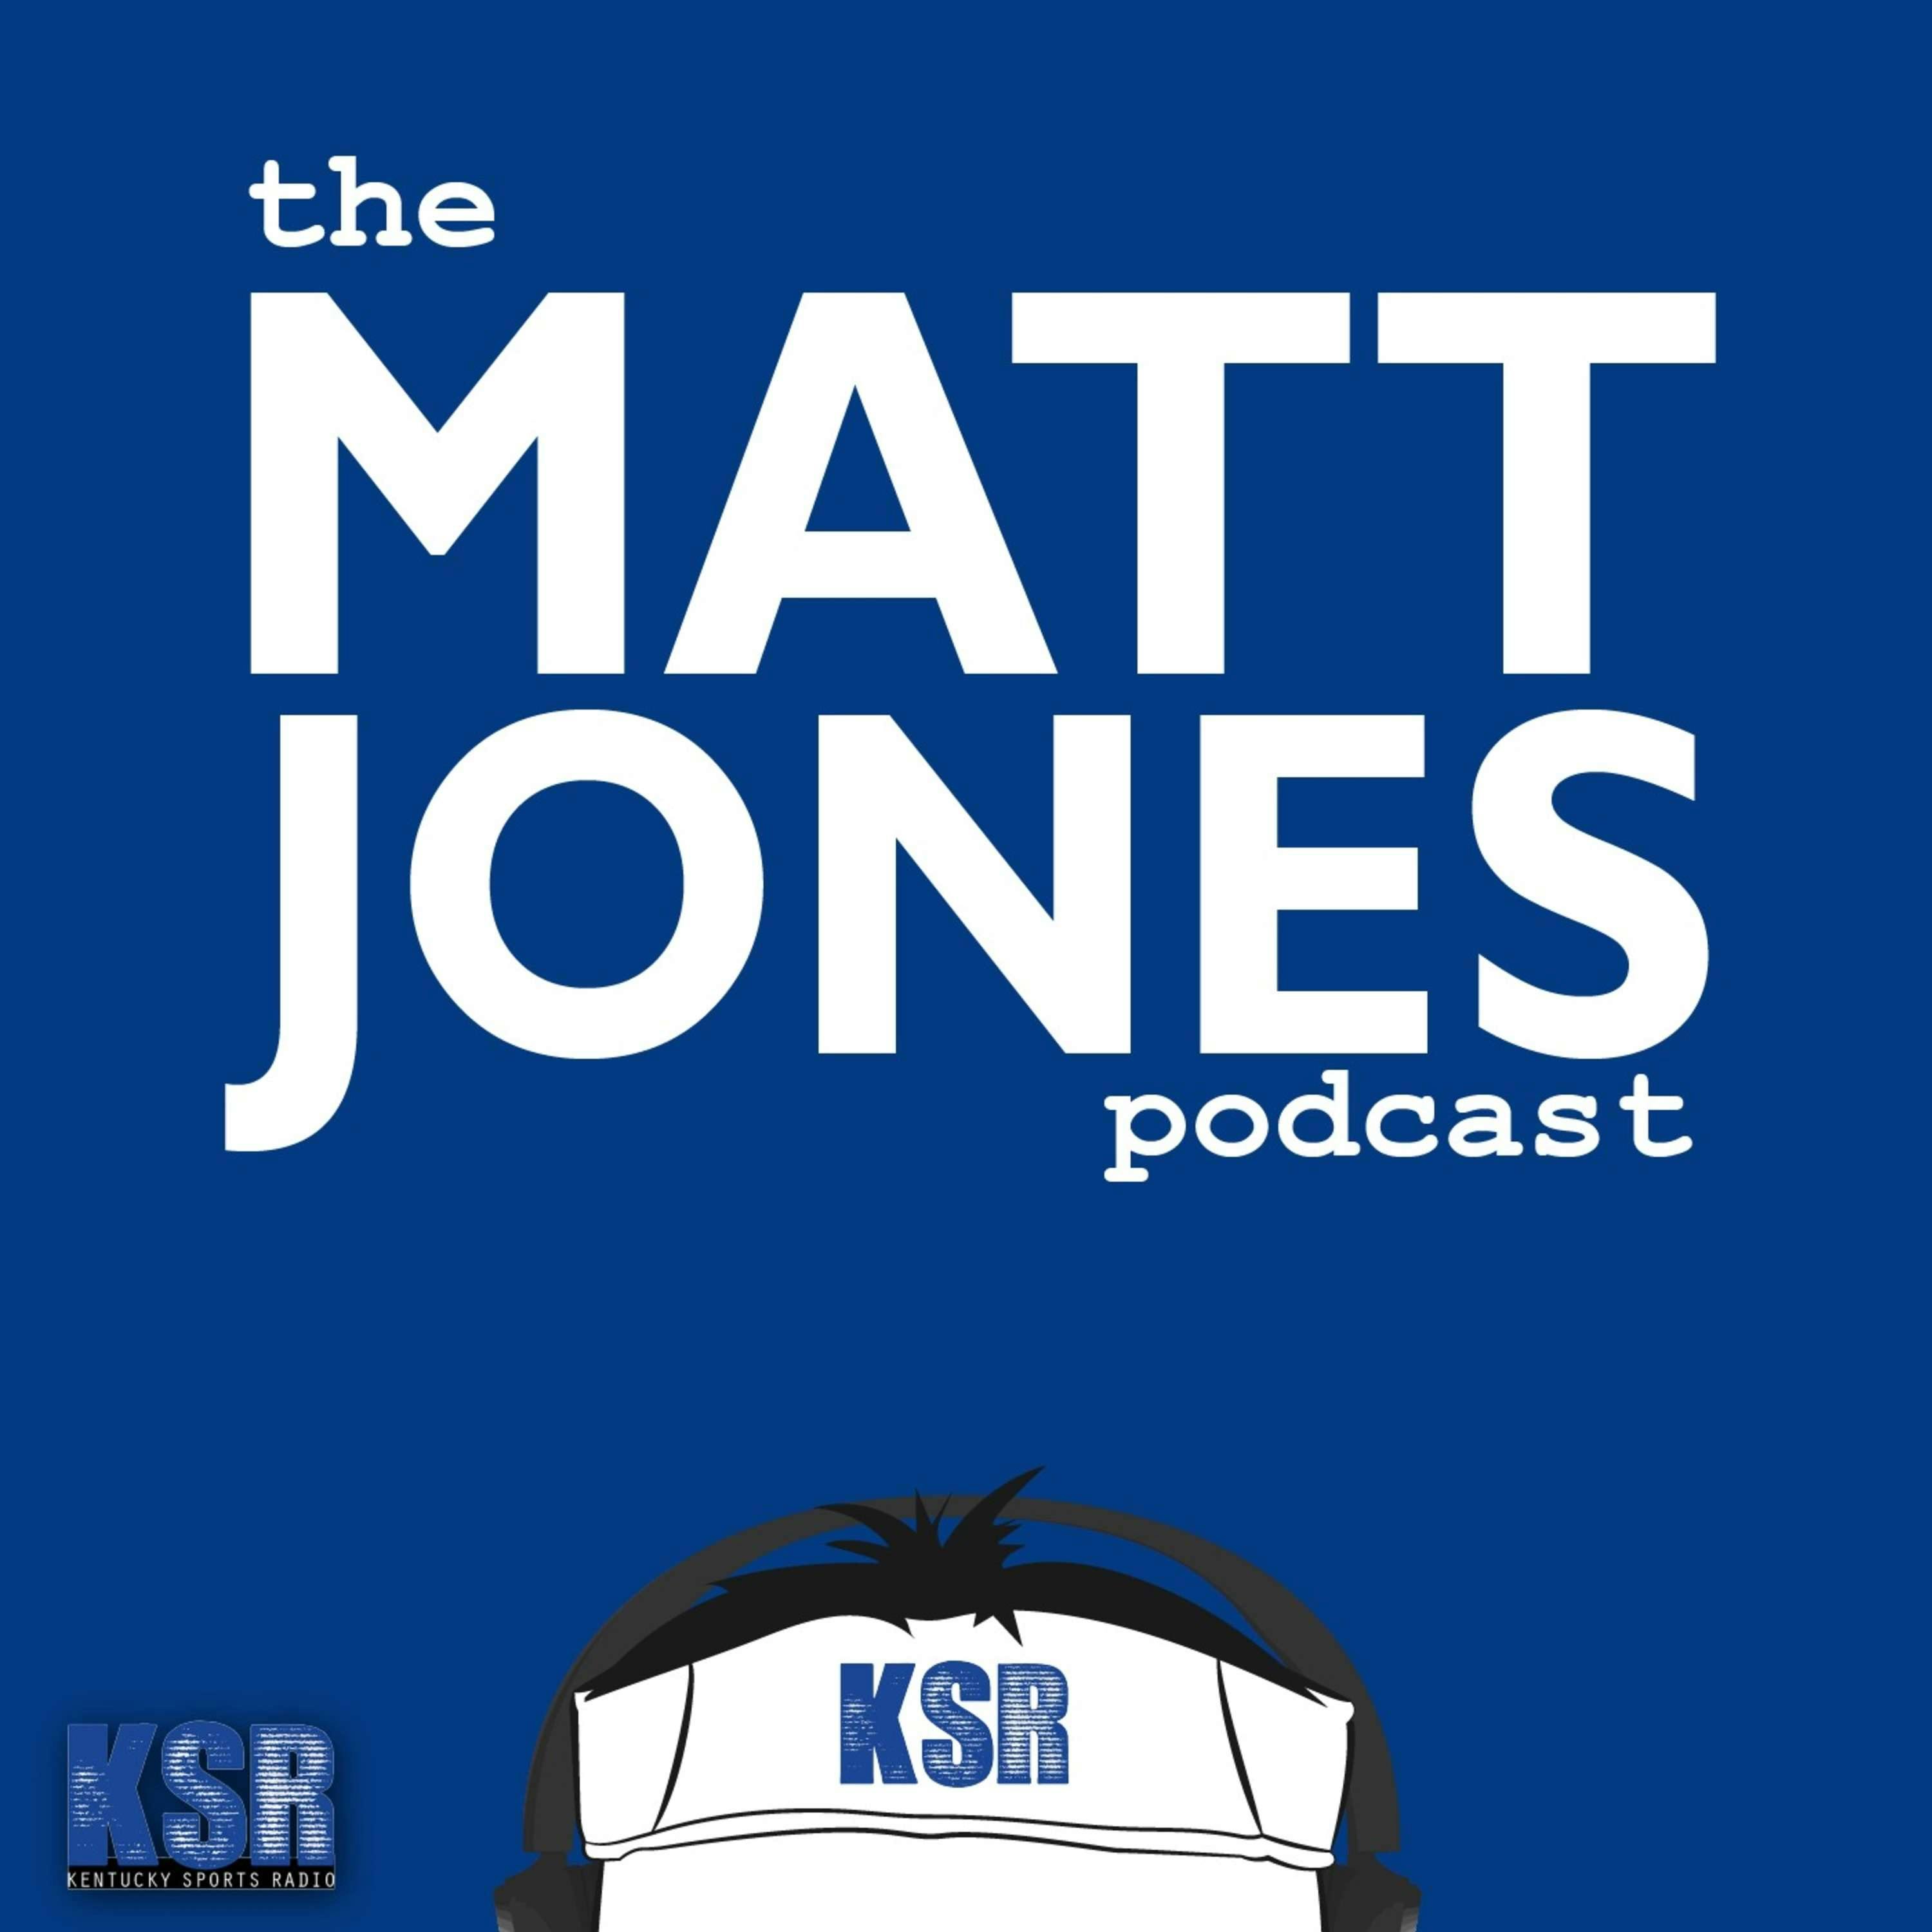 The Matt Jones Podcast E66: Derby Week with Tony Vanetti and Ed DeRosa